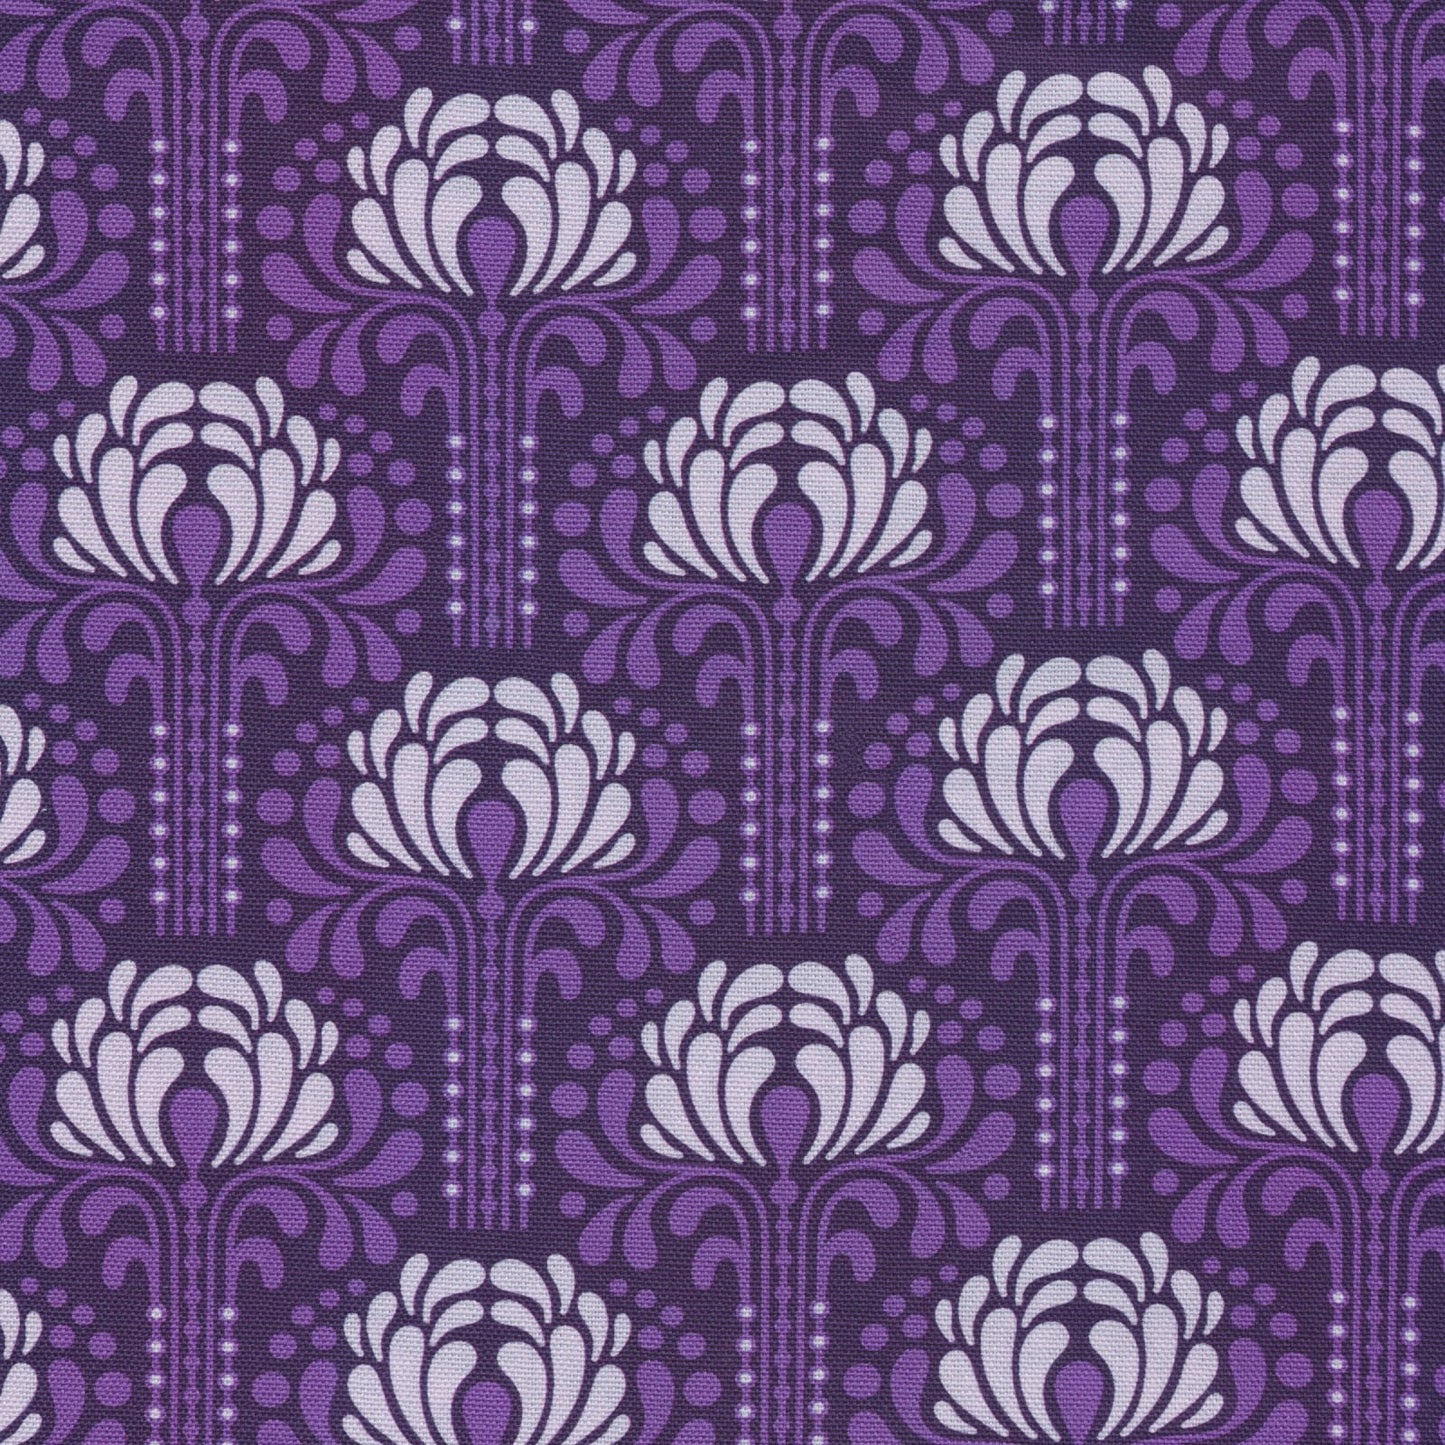 purple and lavender flowers on dark purple